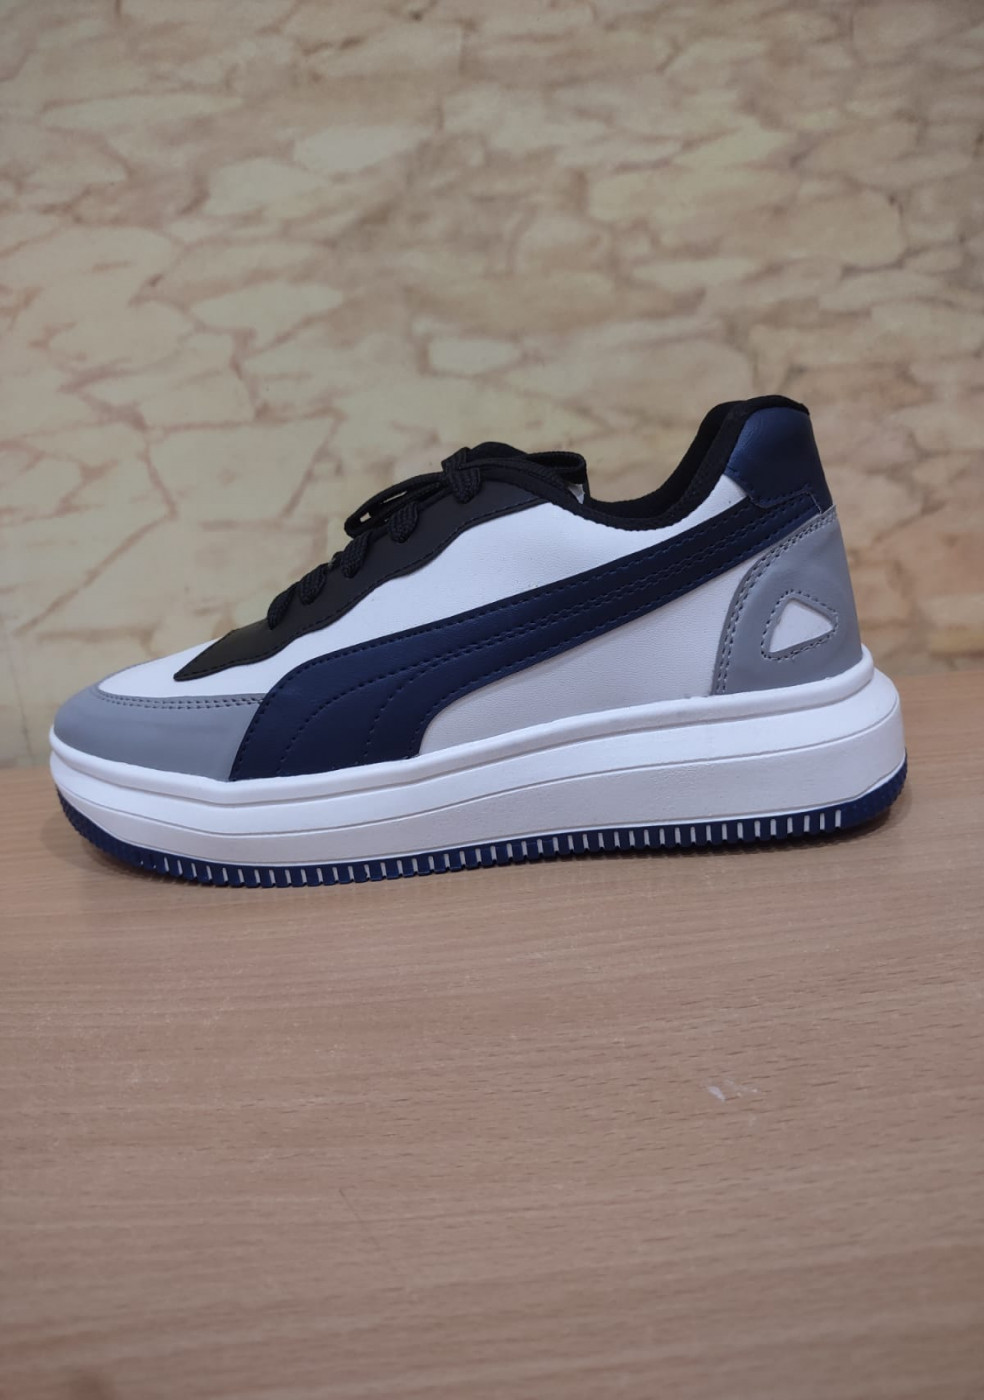 XSTOM White Navy Blue Sneakers For Men